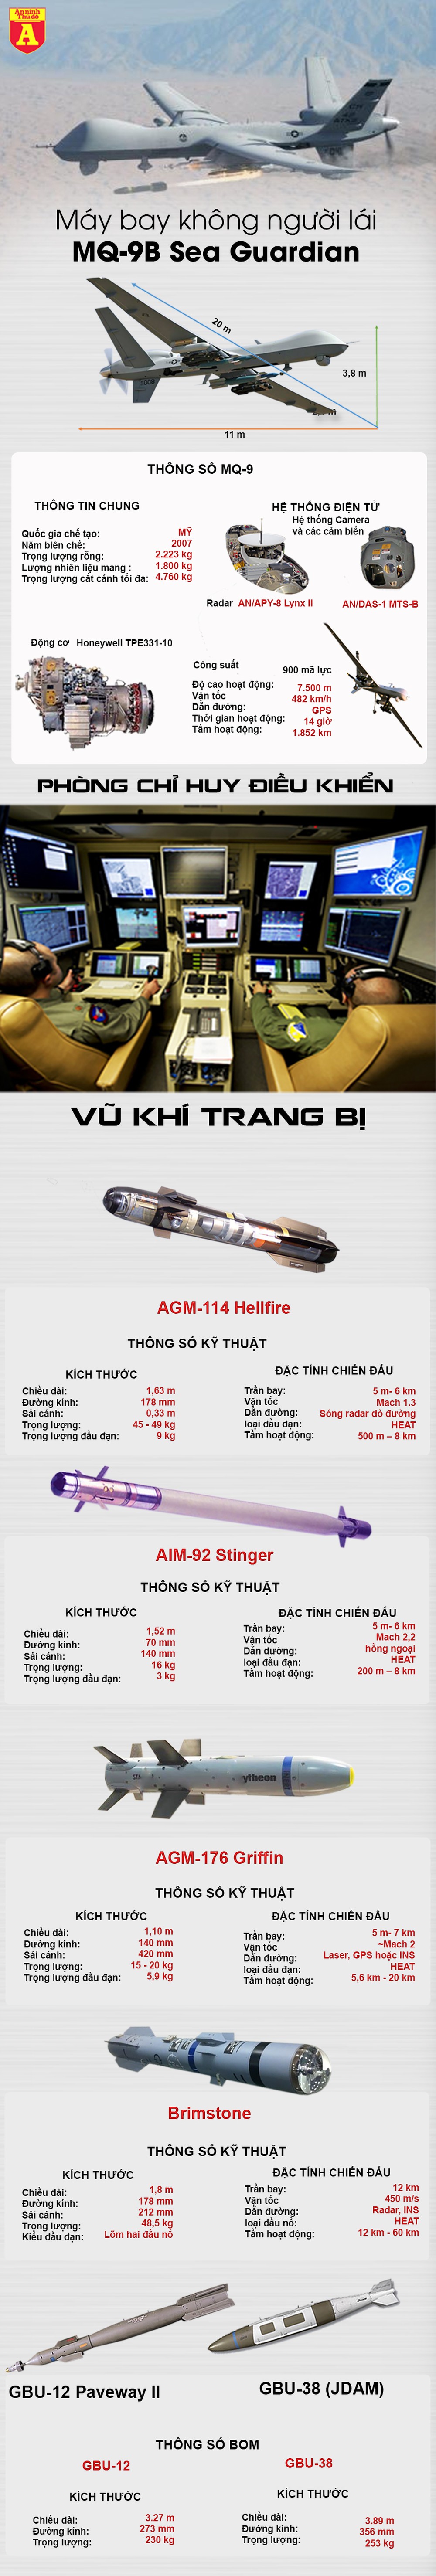 [Infographics] Đúng ngày bầu cử, Mỹ bán 4 "quái điểu" MQ-9 cho đảo Đài Loan  - Ảnh 1